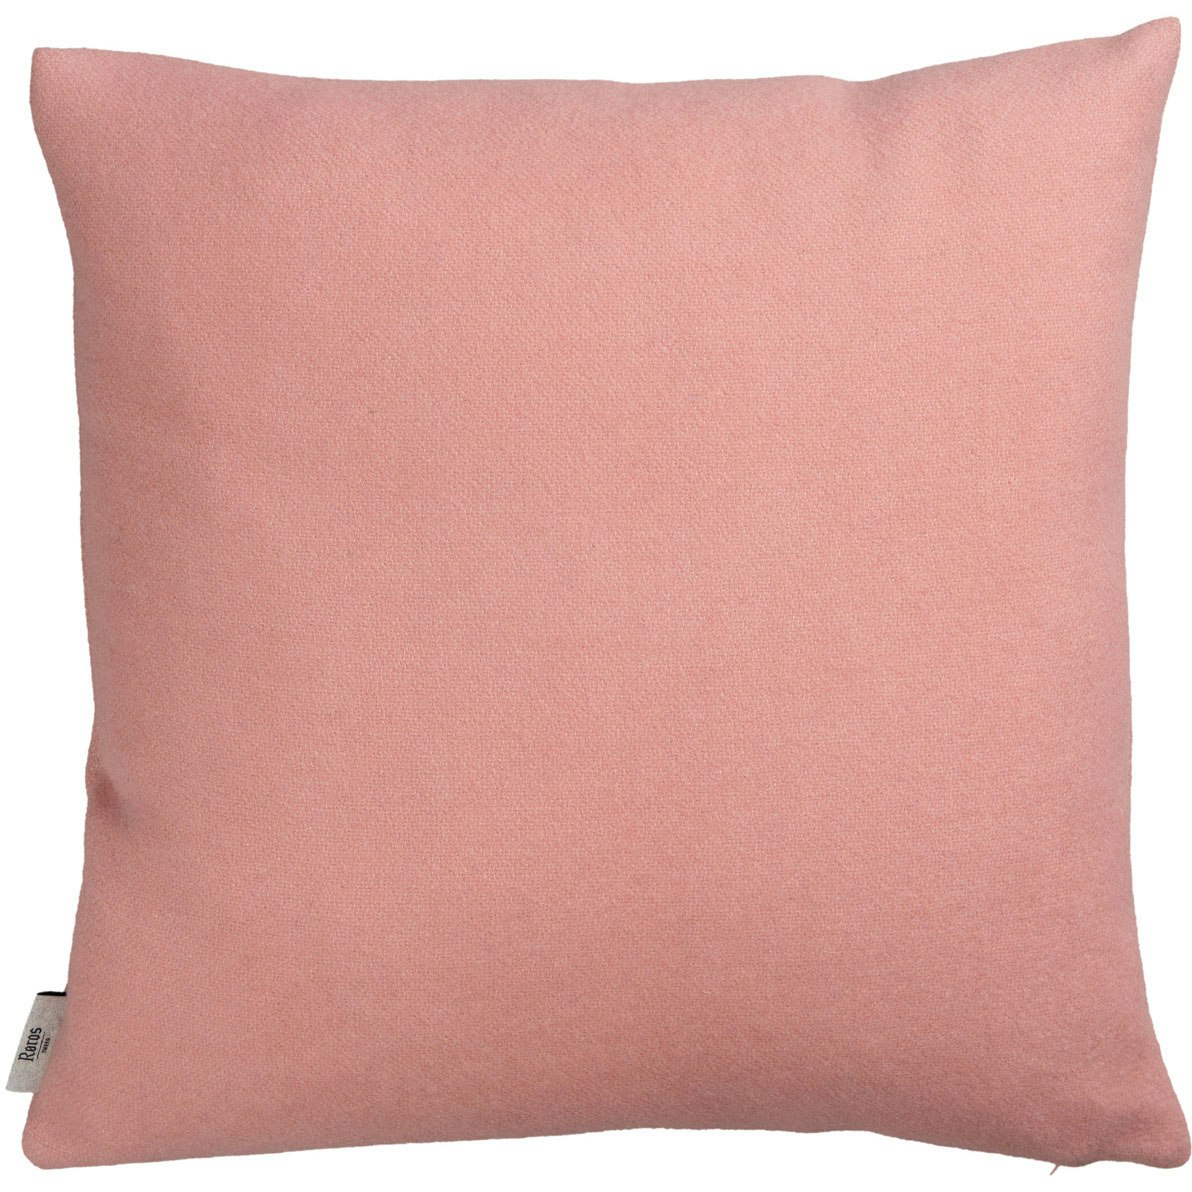 Stemor Cushion 50x50 cm, Dusty Pink